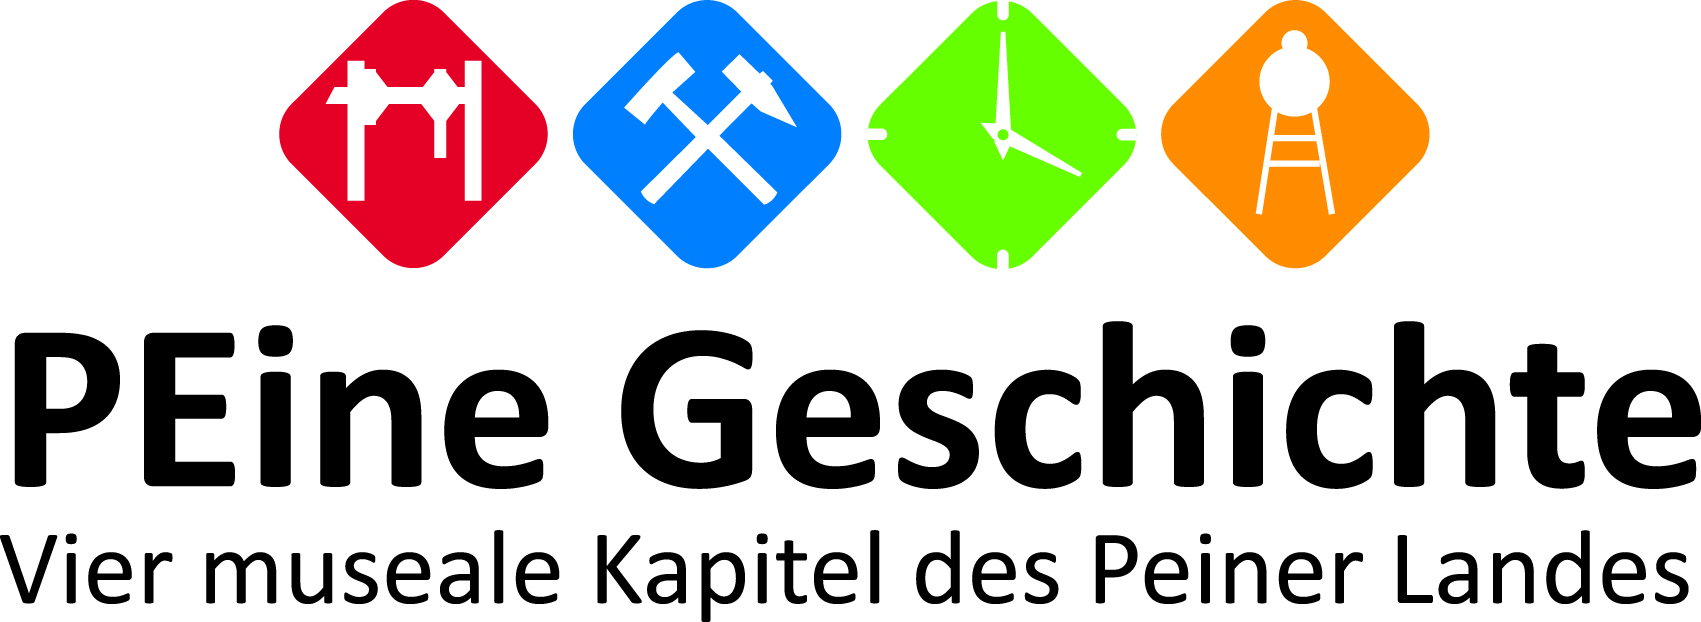 PEine Geschichte, Logo, Peine